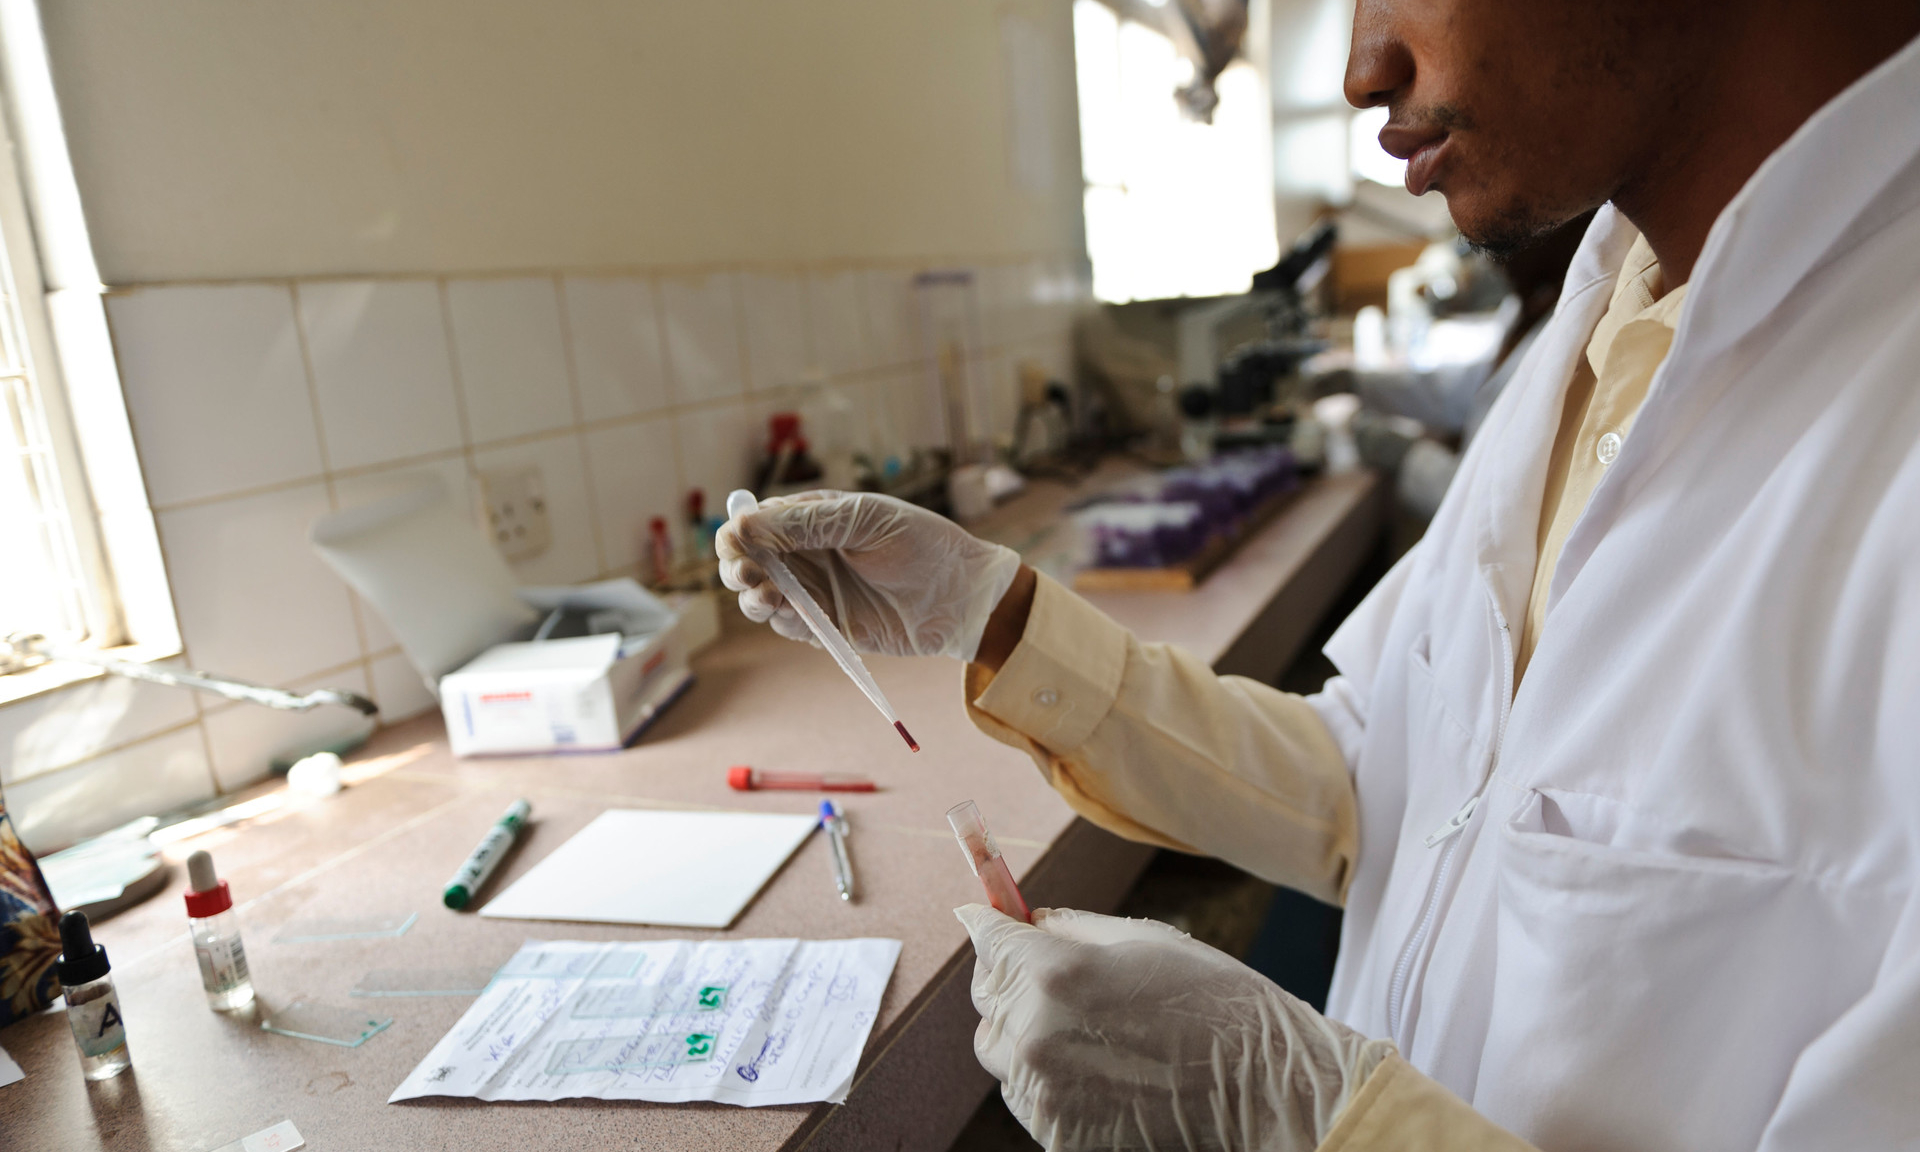 Новый штамм малярии устойчив к действию лекарств